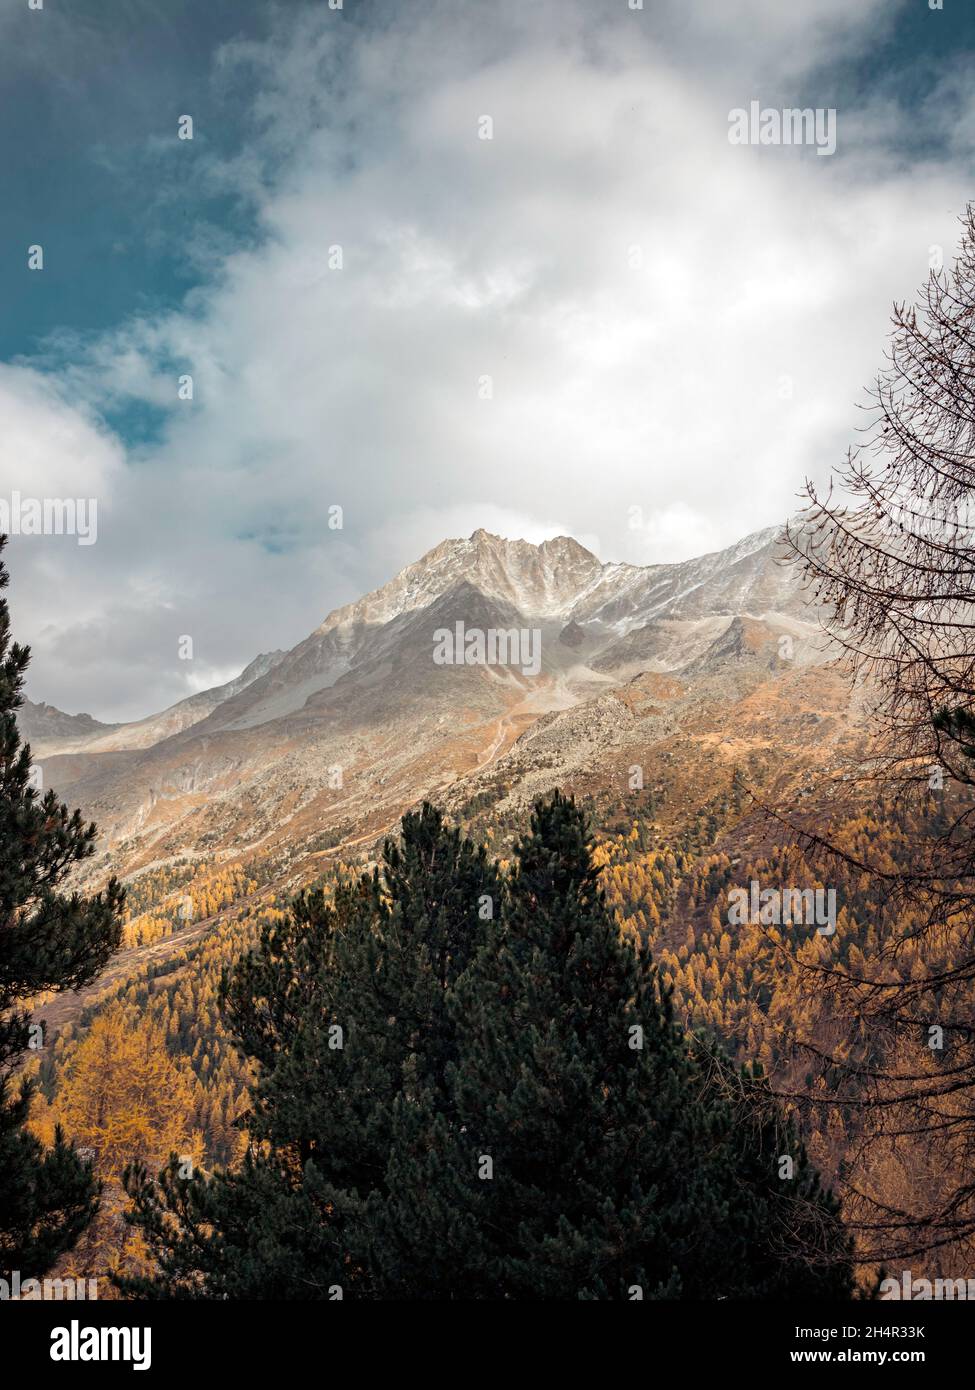 Vistas increíbles sobre un alto valle alpino y montañas cubiertas de nieve. Los árboles de otoño y otoño de color naranja y amarillo bordean los lados del valle Foto de stock